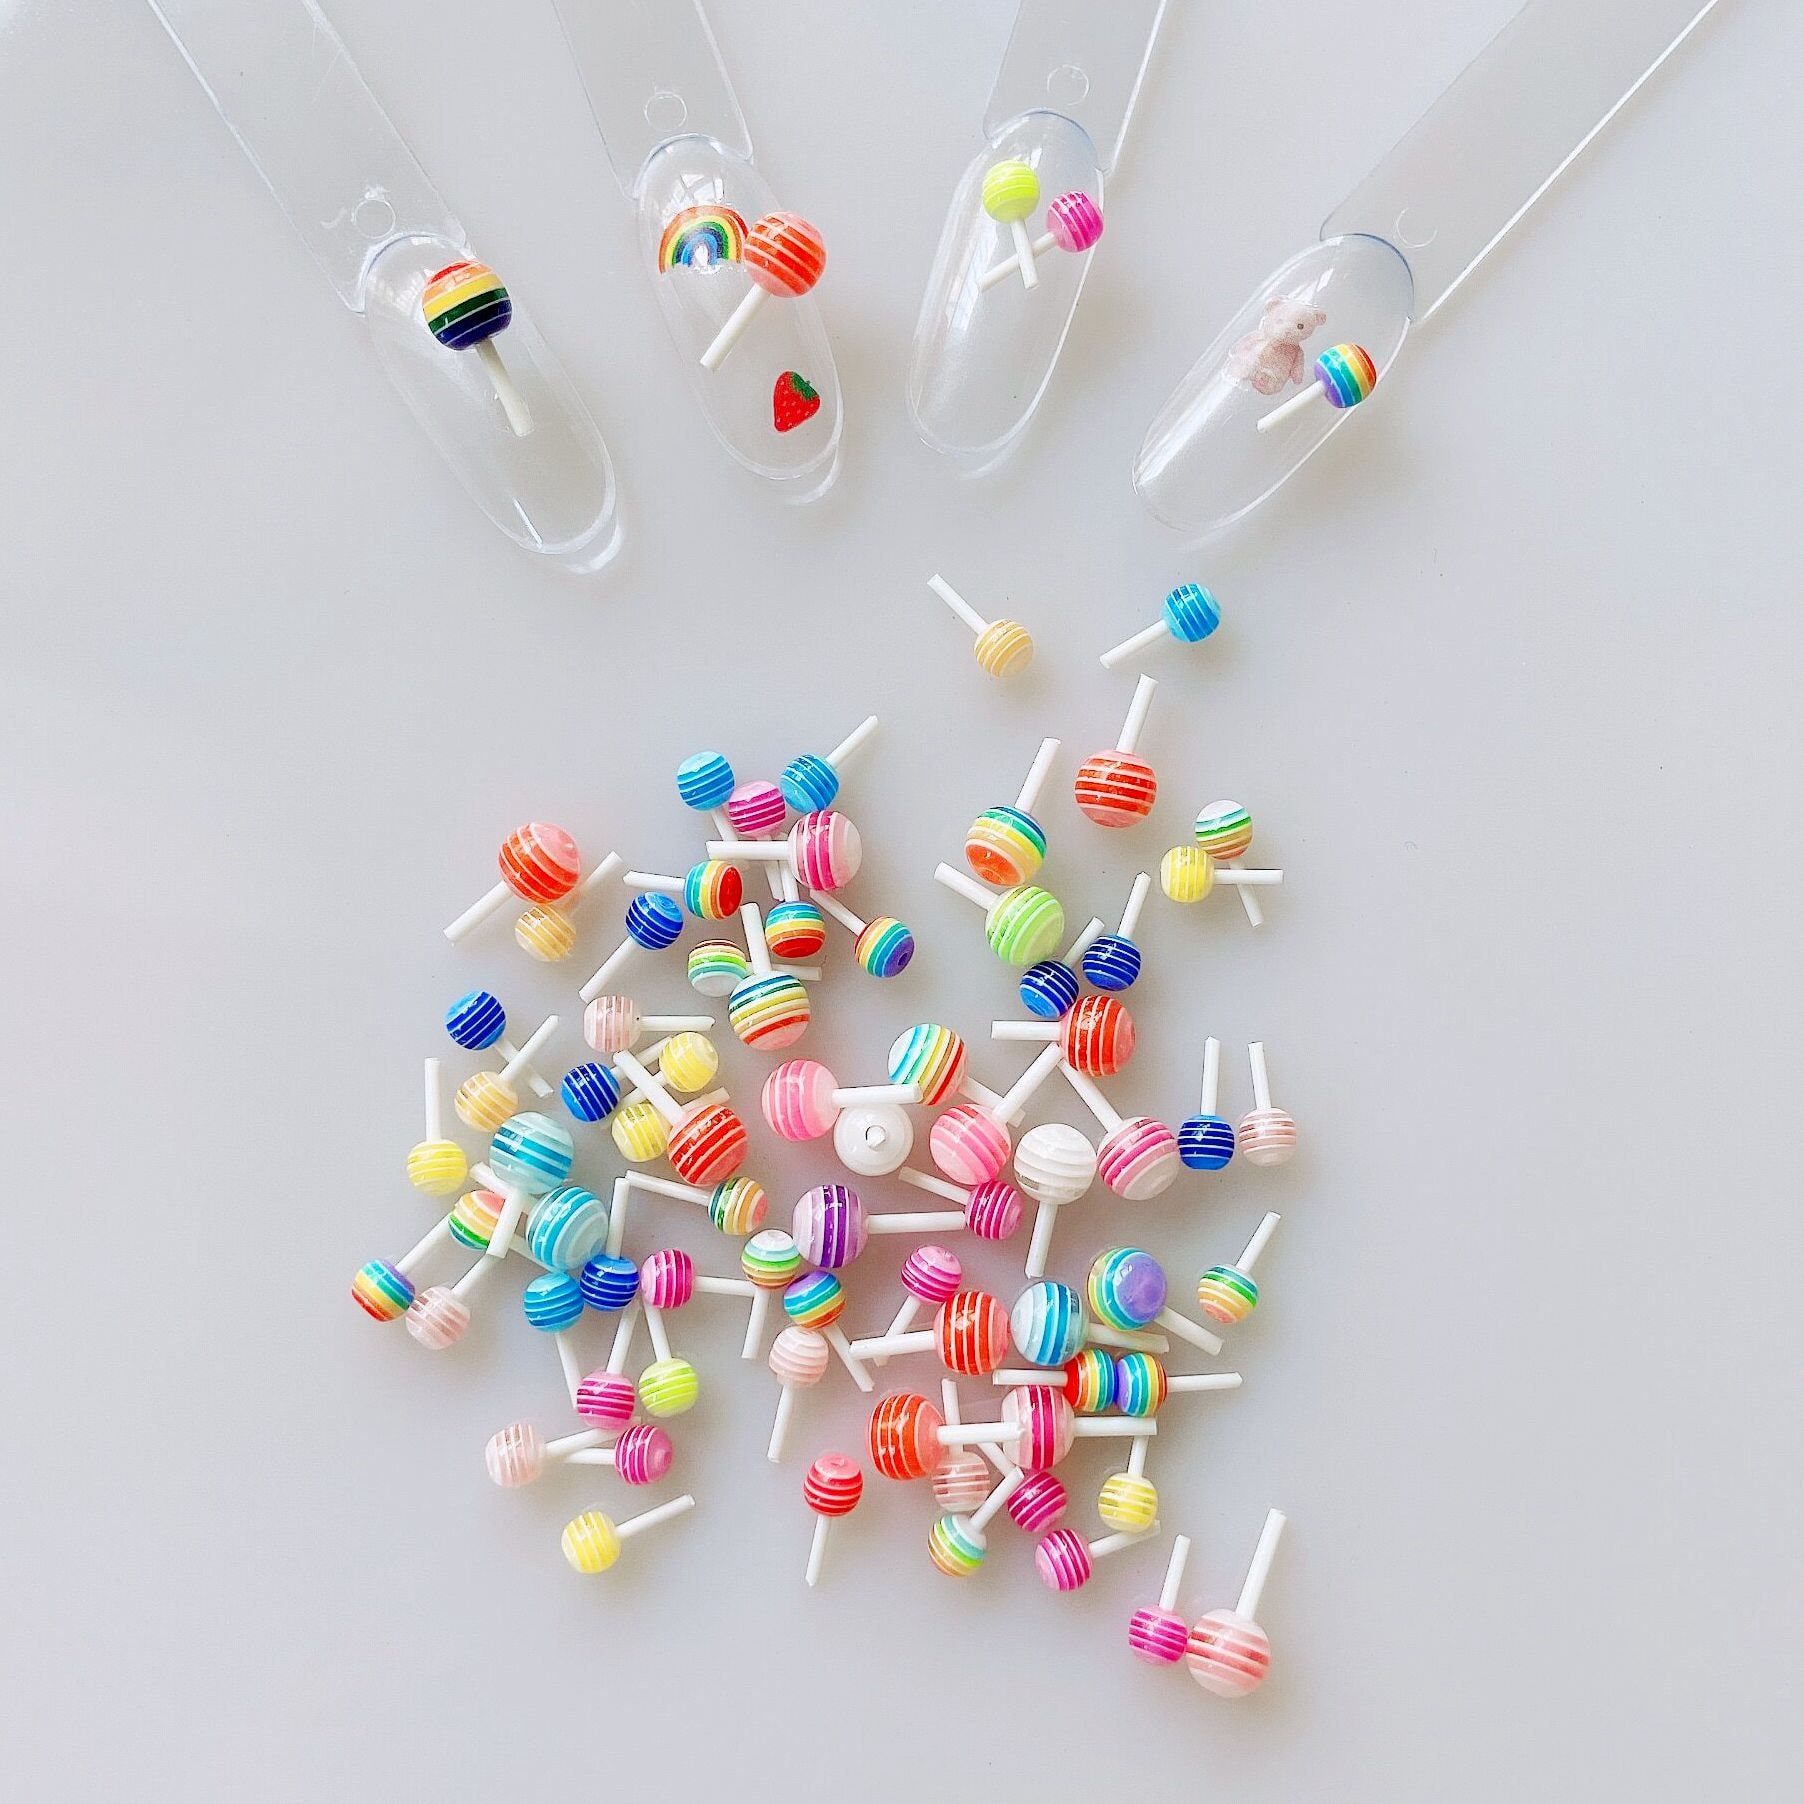 30 Stück/Tasche Cartoon Nail Art Lollypop Candy Deco Resin Zufällig Gemischt Farben Deko Dekoration Nagel Diy 4mm/6mm Rc244 von NailAngel2019